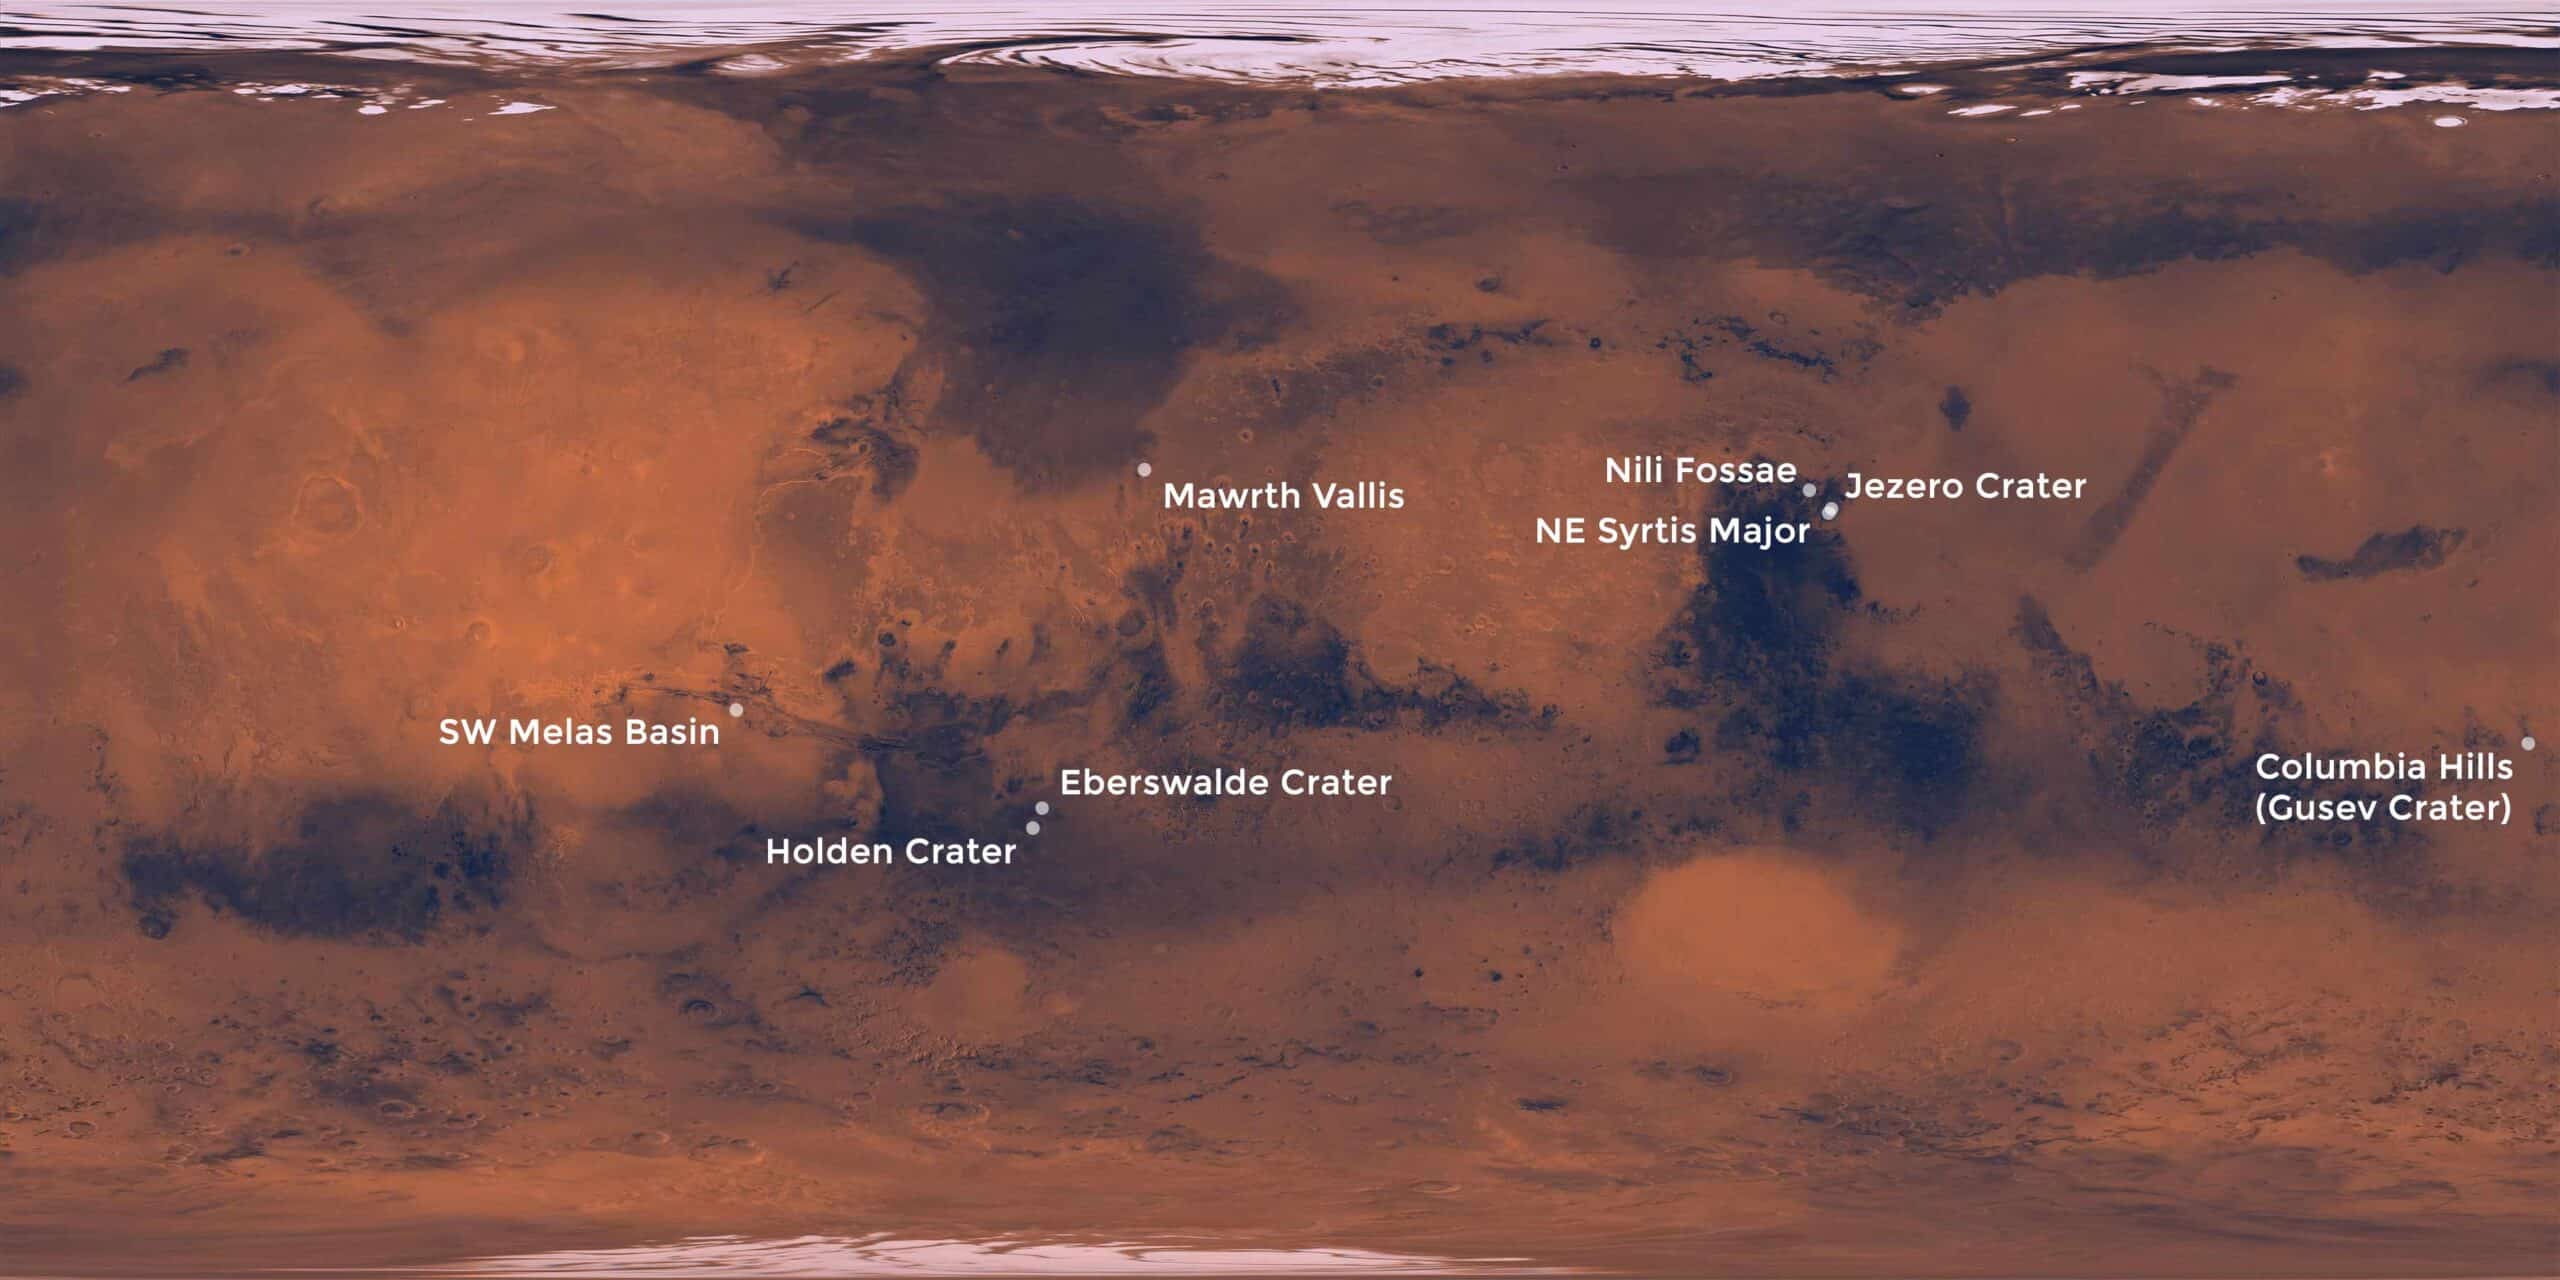 landing sites on Mars